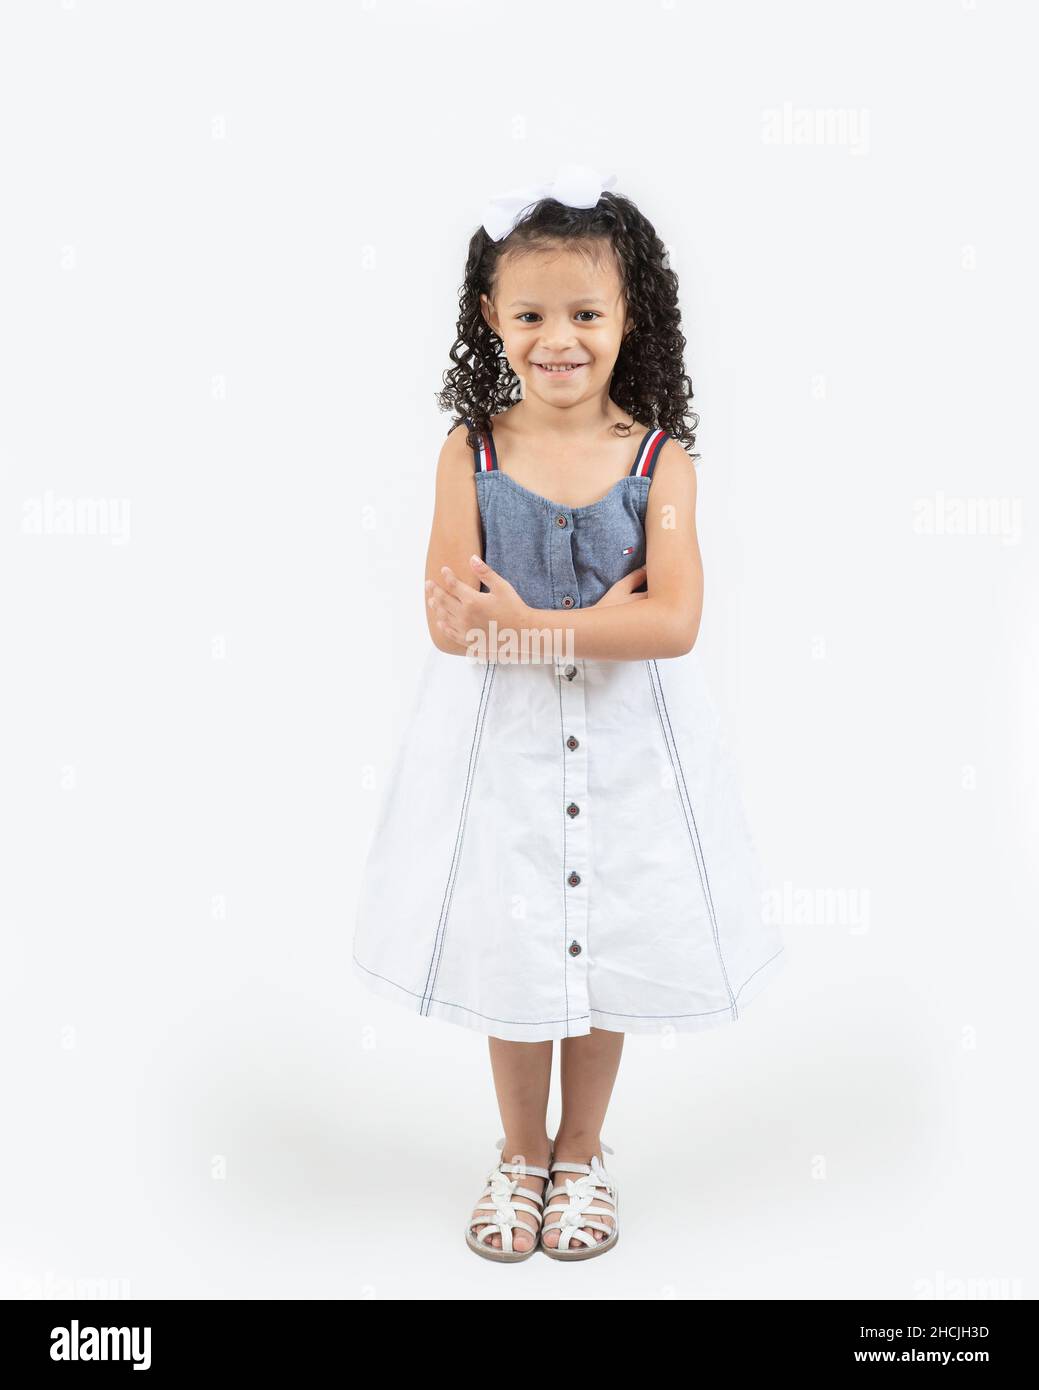 Primer plano retrato de una niña de 4 años, sonriente, fondo blanco, largo completo Foto de stock